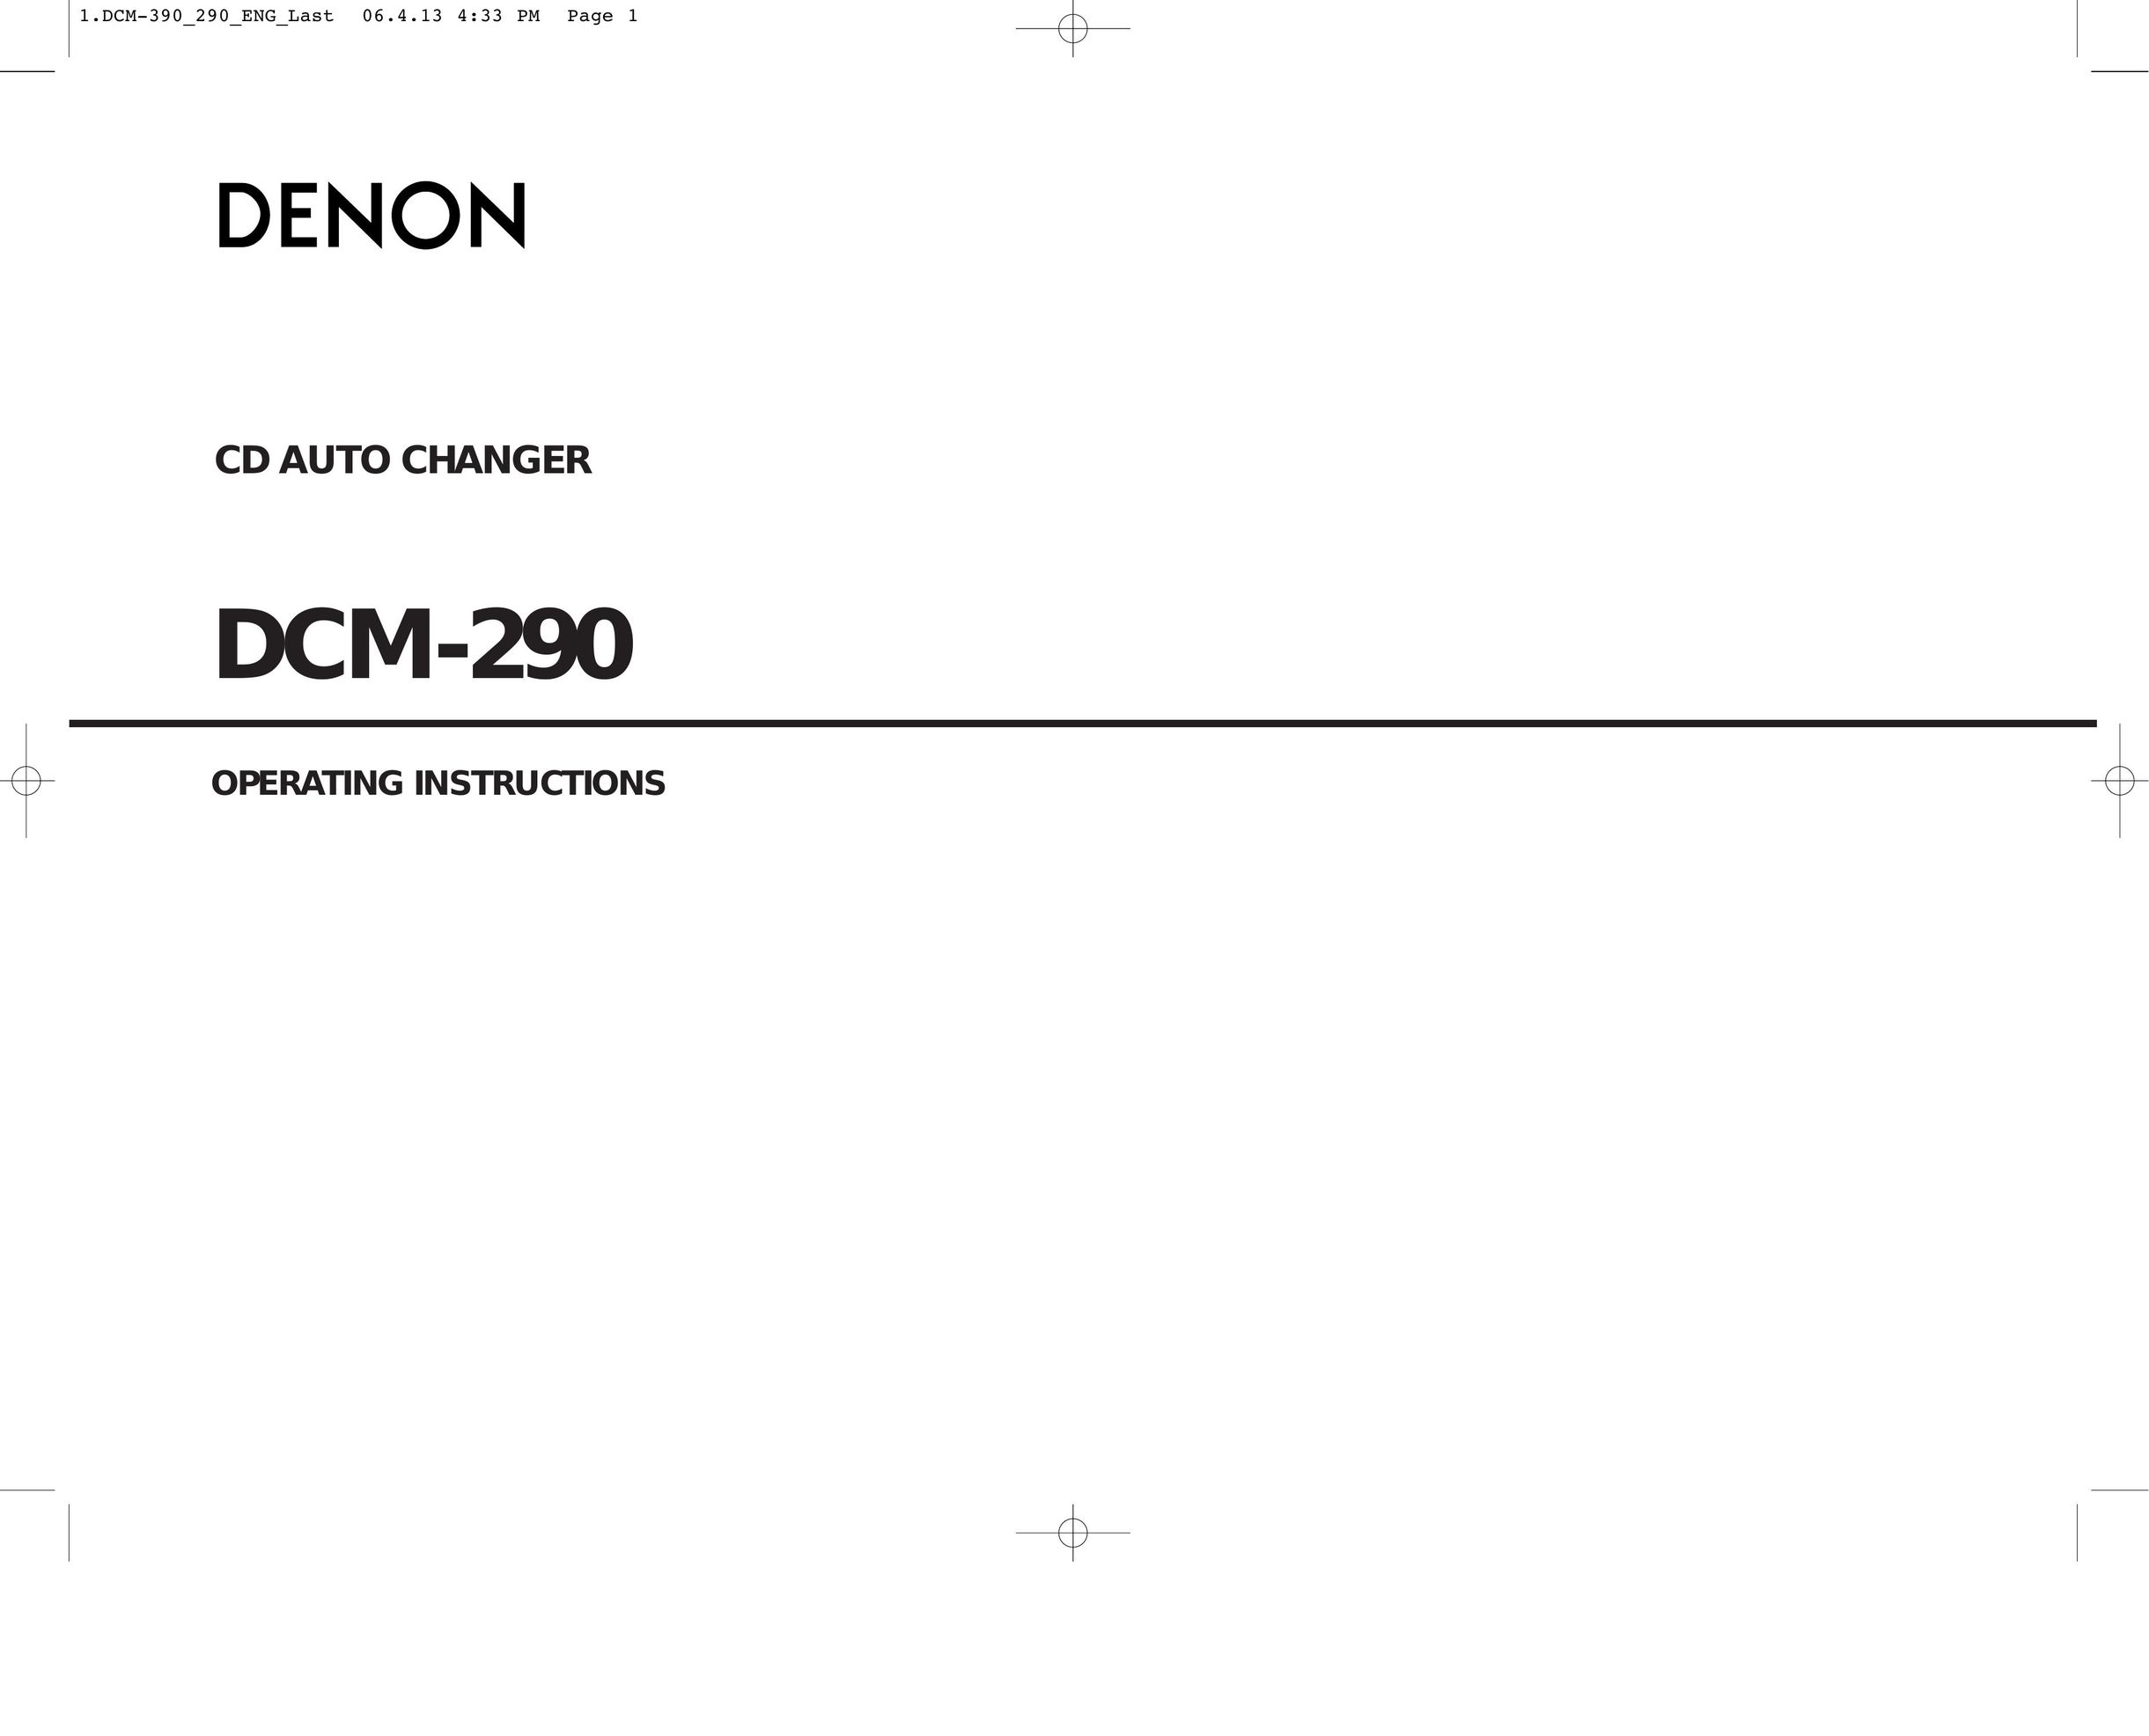 Denon DCM-290 CD Player User Manual